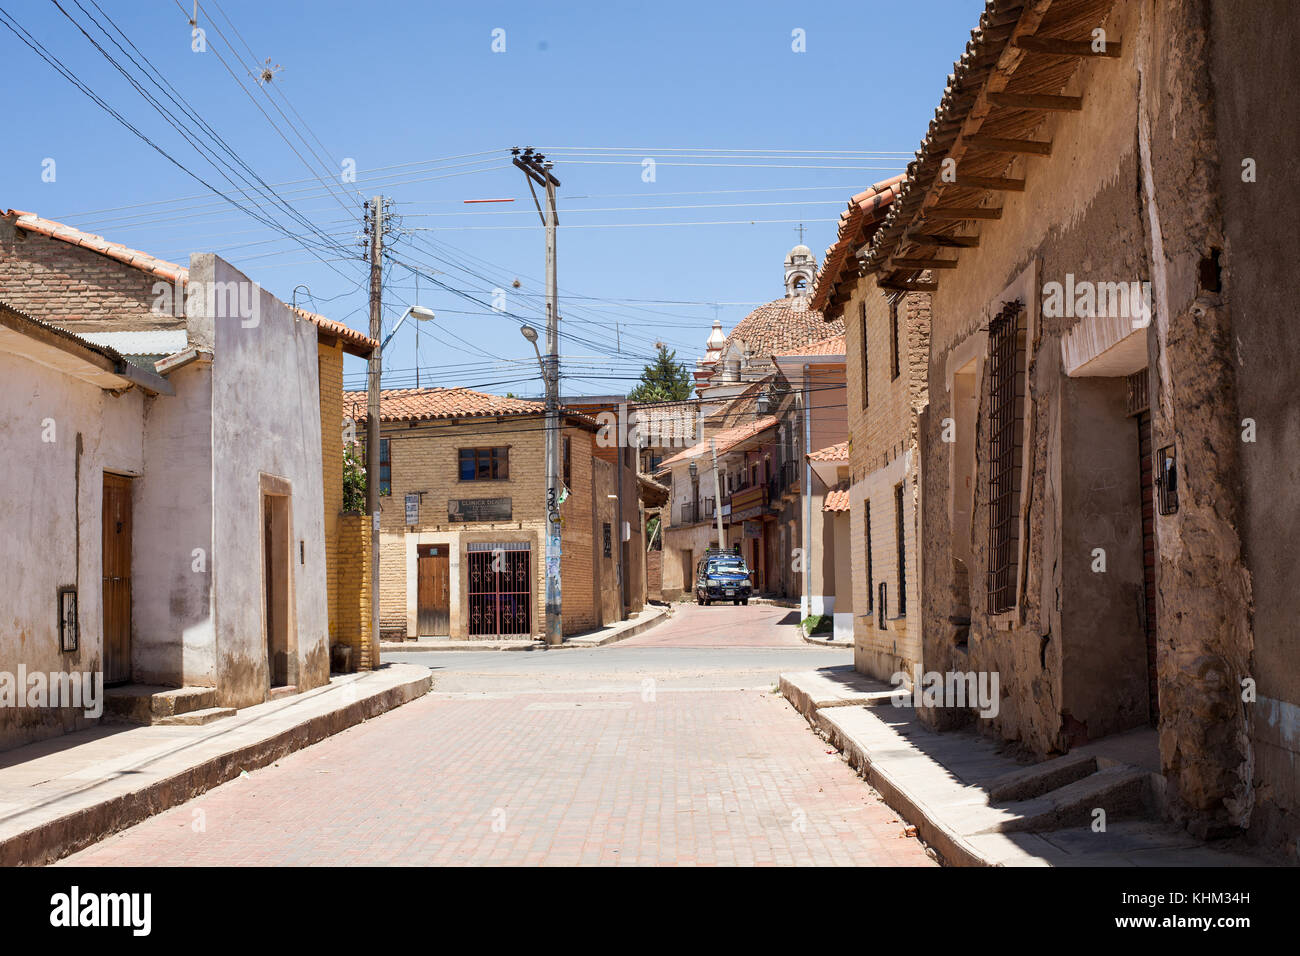 Tarata, Cochabamba Bolivia s.a. - Ottobre 2017: tranquille strade in ciottoli della coloniale tarata, Bolivia. Foto Stock